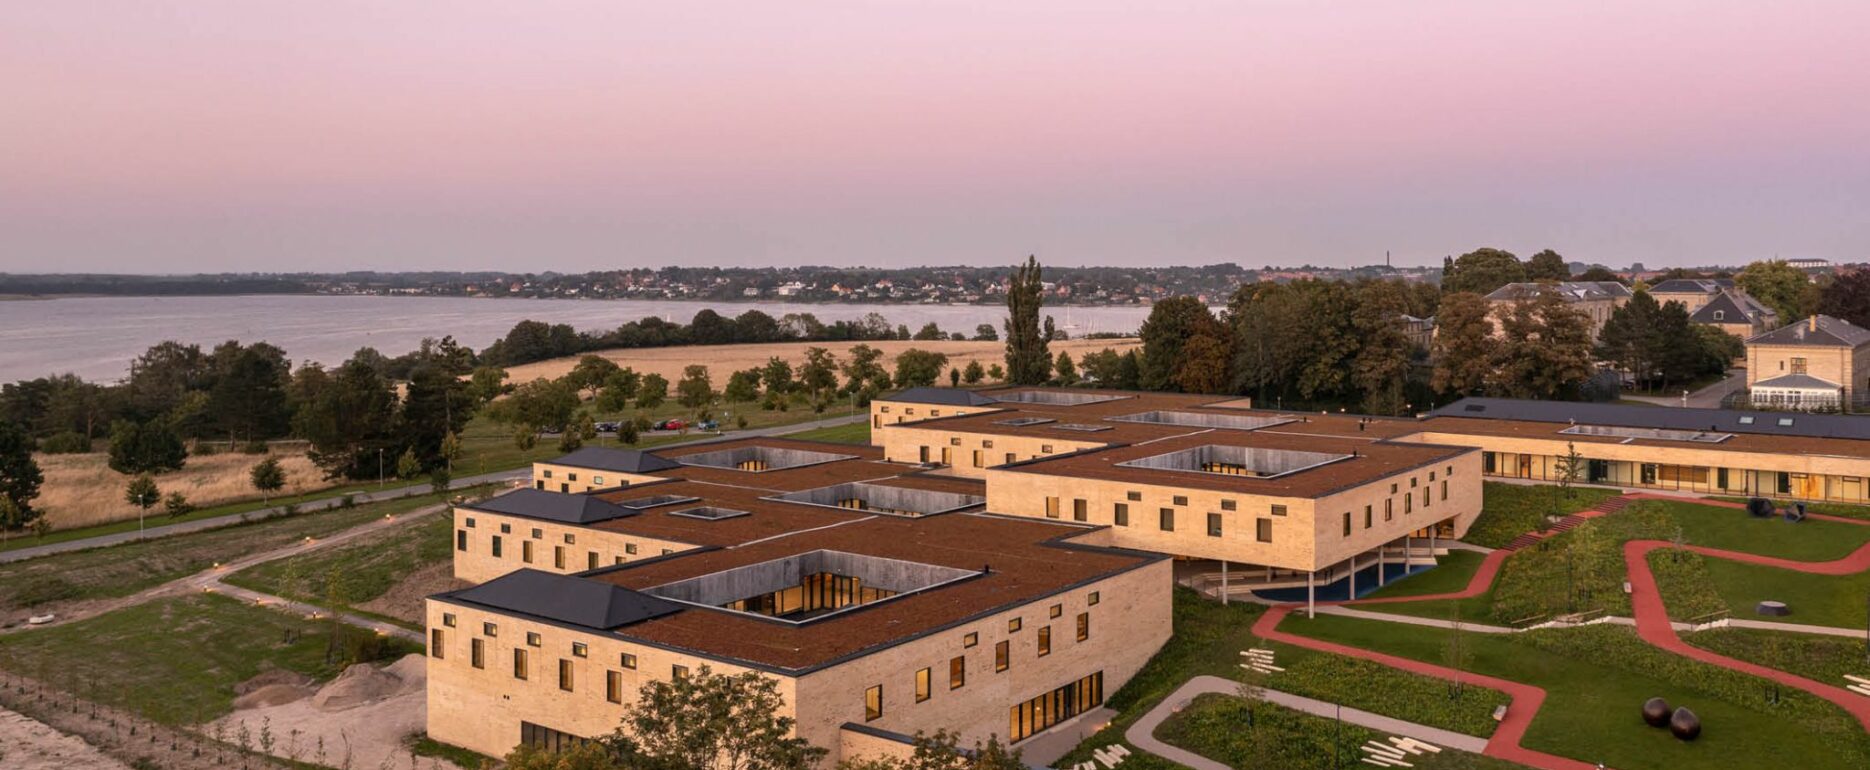 Retspsykiatri i danmark har fått nytt utegym som är hærværkssäkra och egnar sig till psykiatrier och fængsler